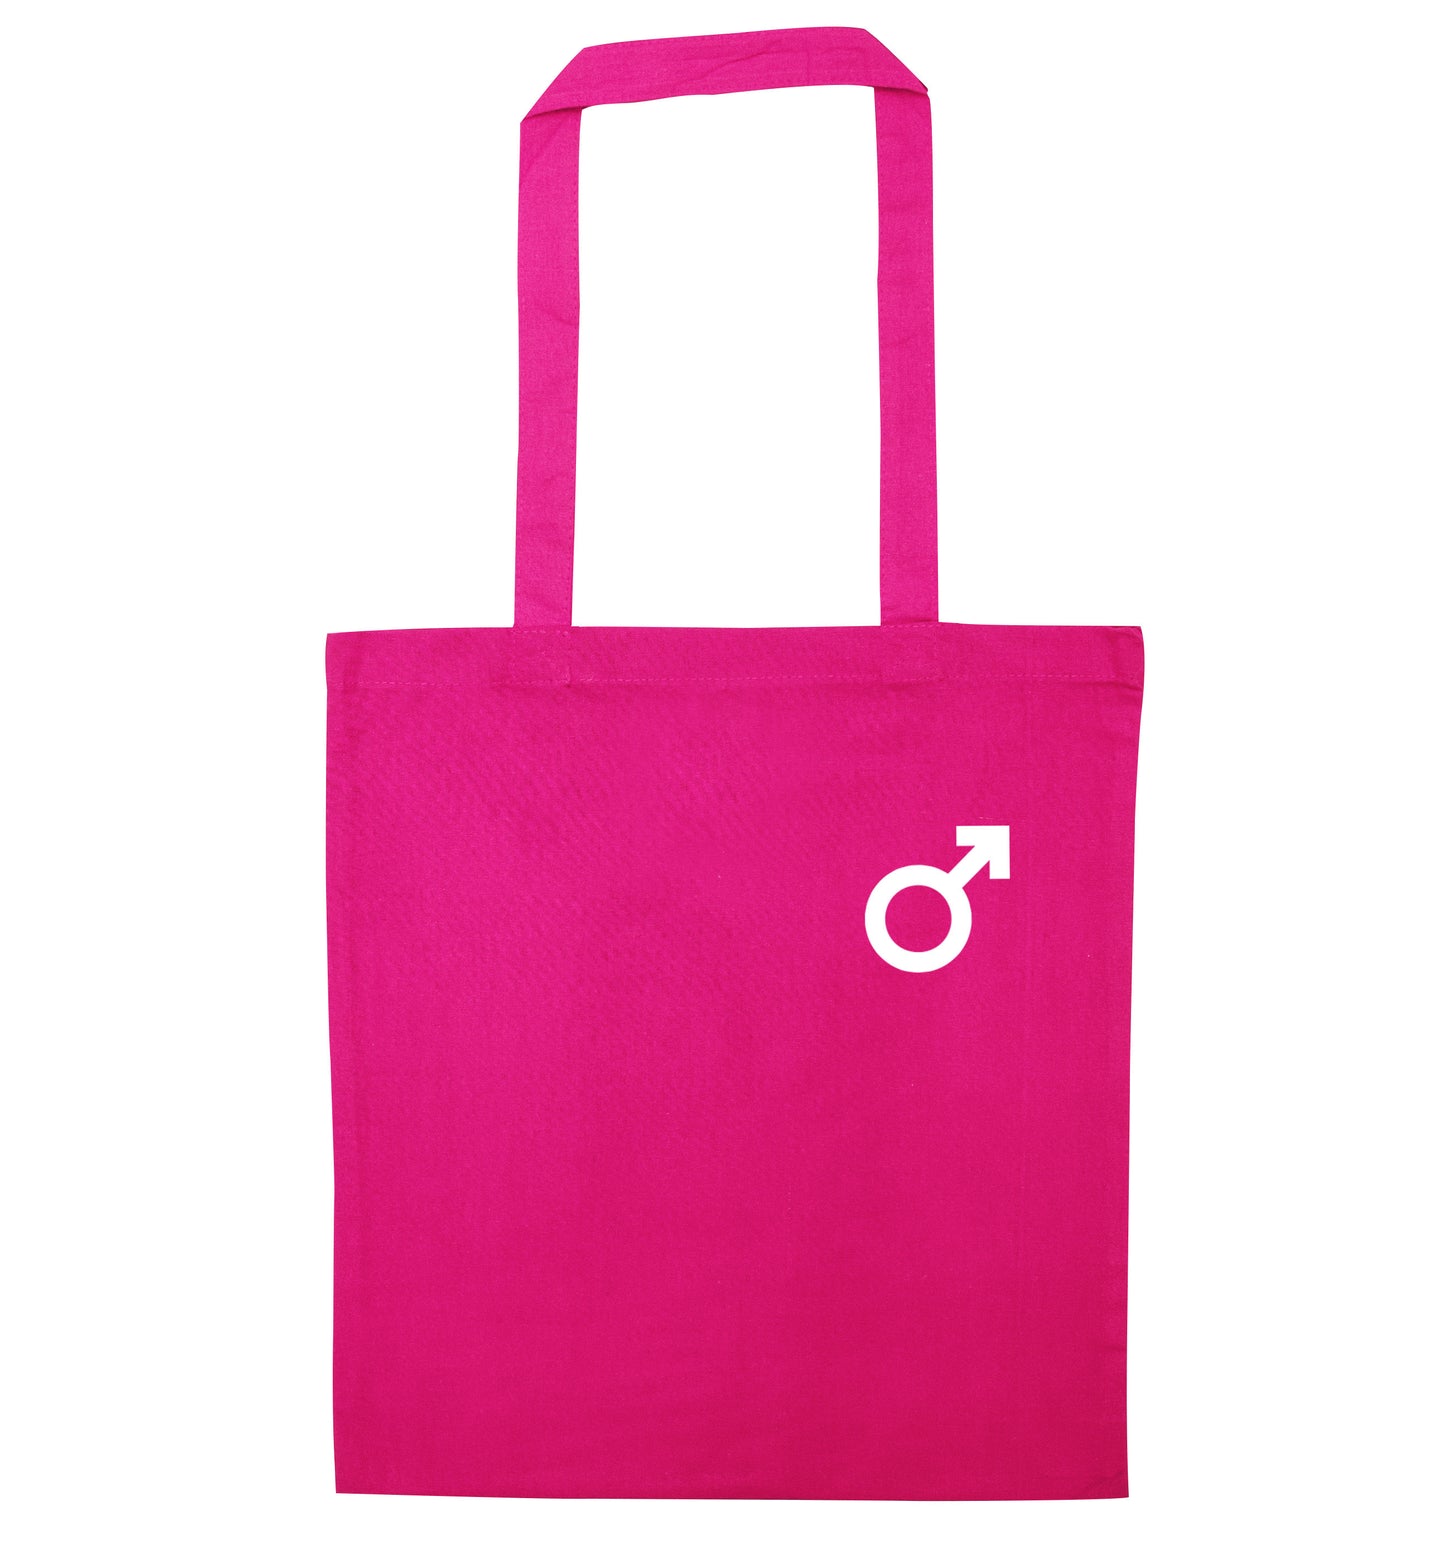 Male symbol pocket pink tote bag